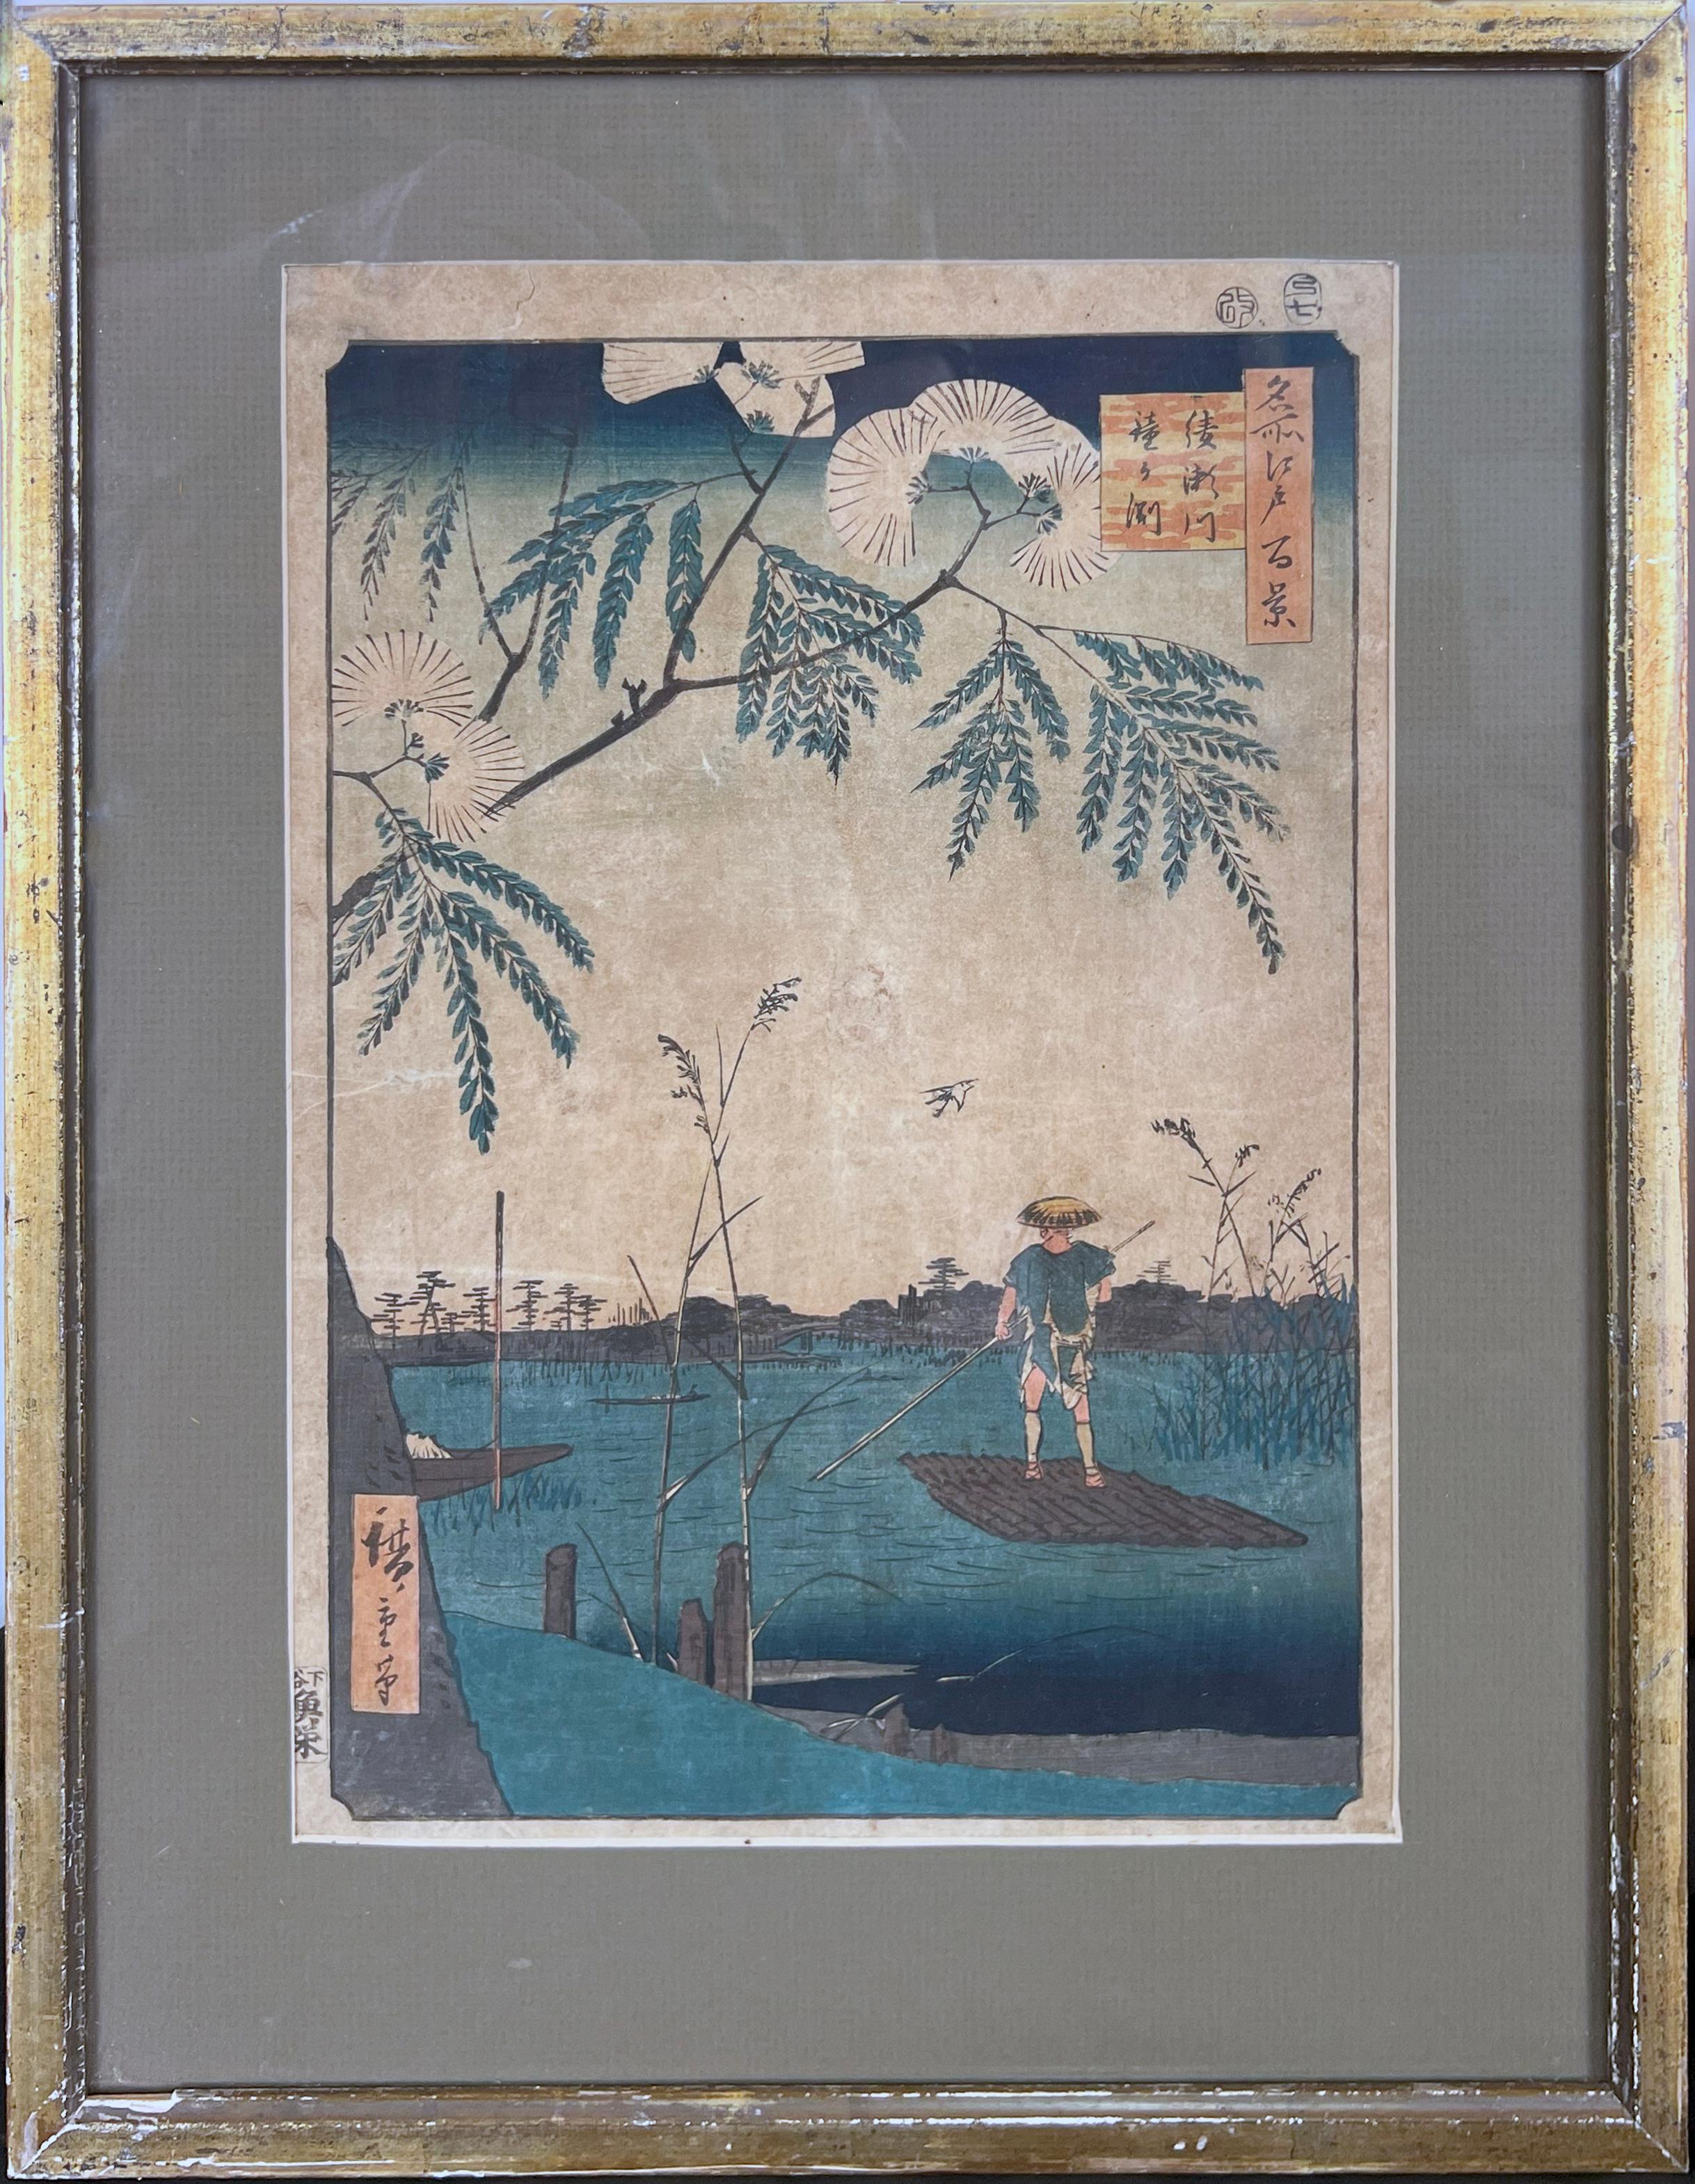 Utagawa Hiroshige (Ando Hiroshige) Landscape Print - The Ayase River and Kanegafuchi, Summer, One Hundred Famous Views of Edo 